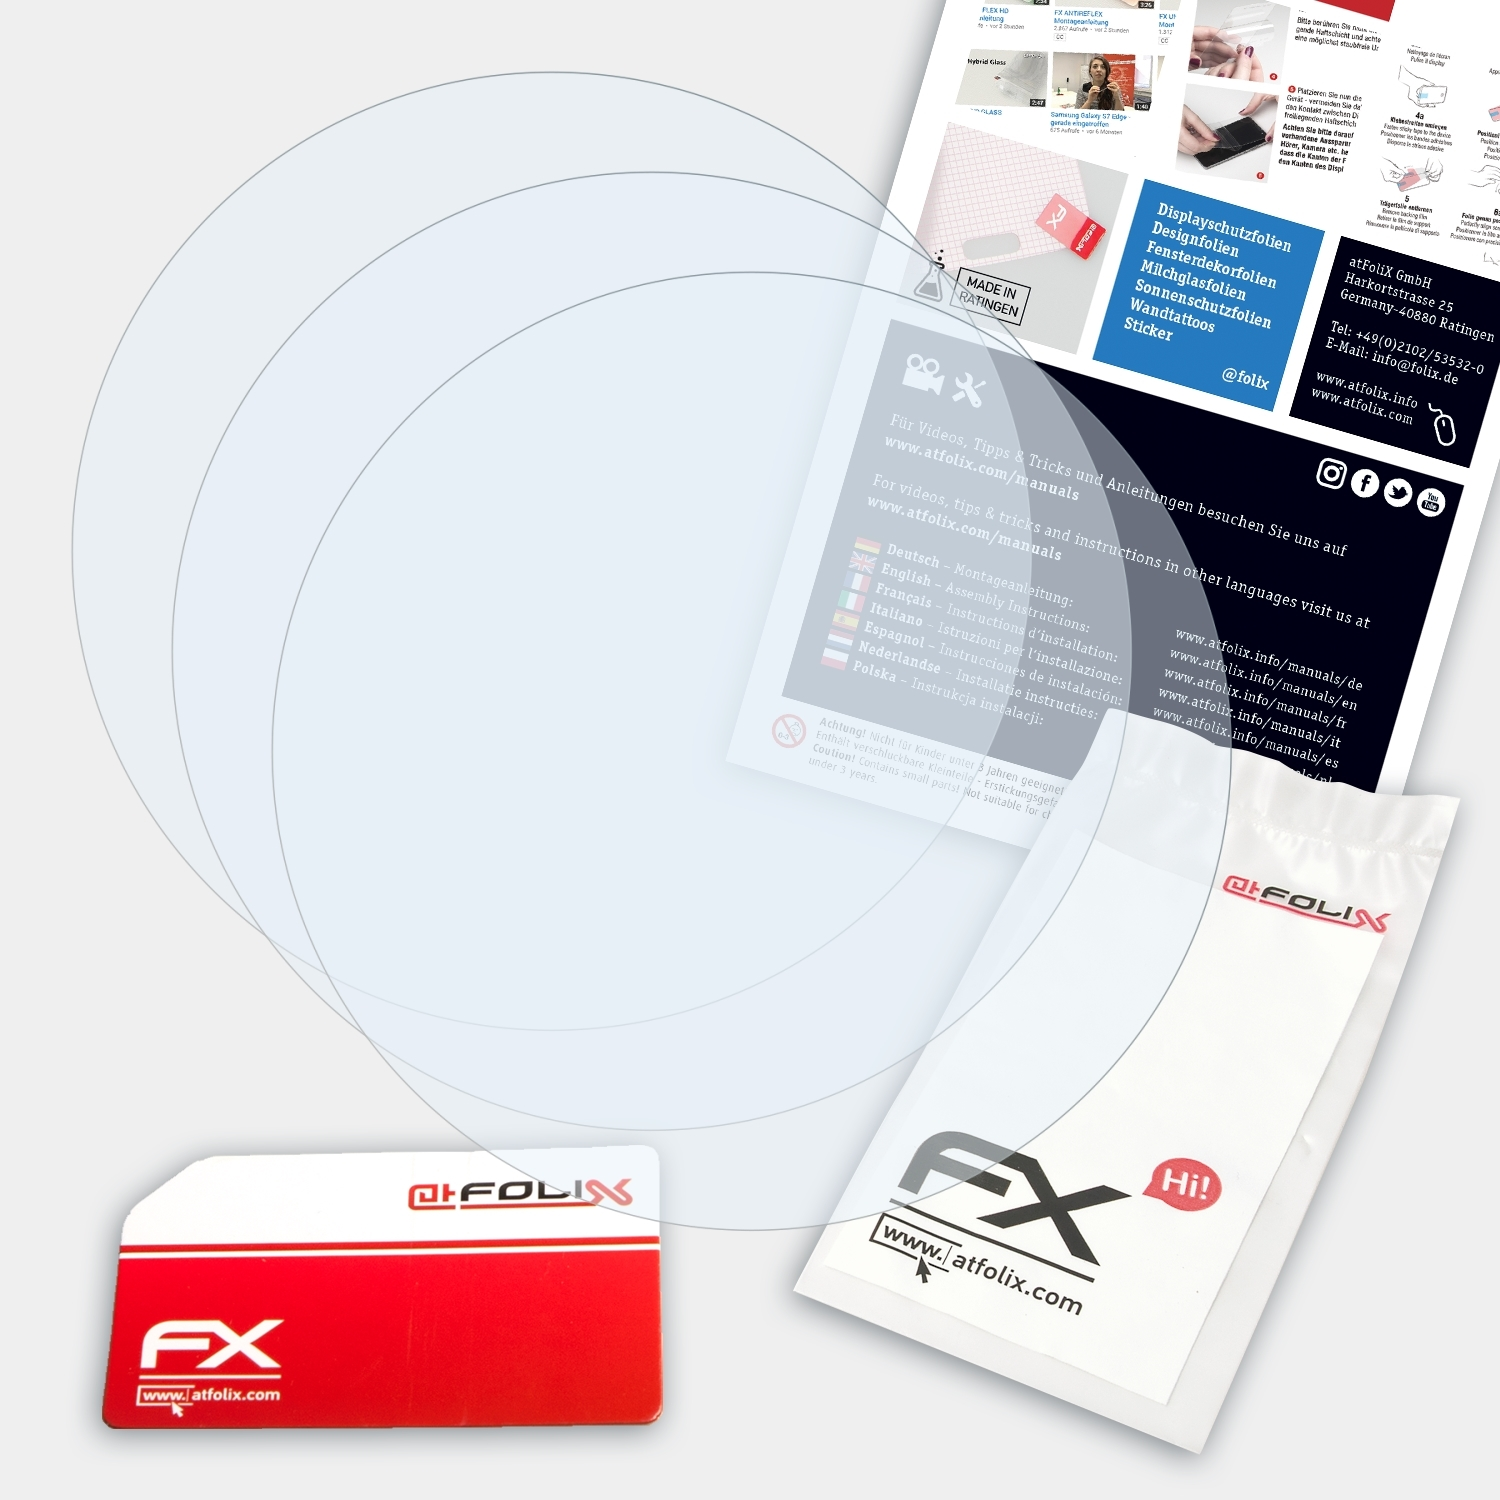 ATFOLIX 3x FX-Clear Displayschutz(für Motorola mm)) 360 Moto (42 2.Generation